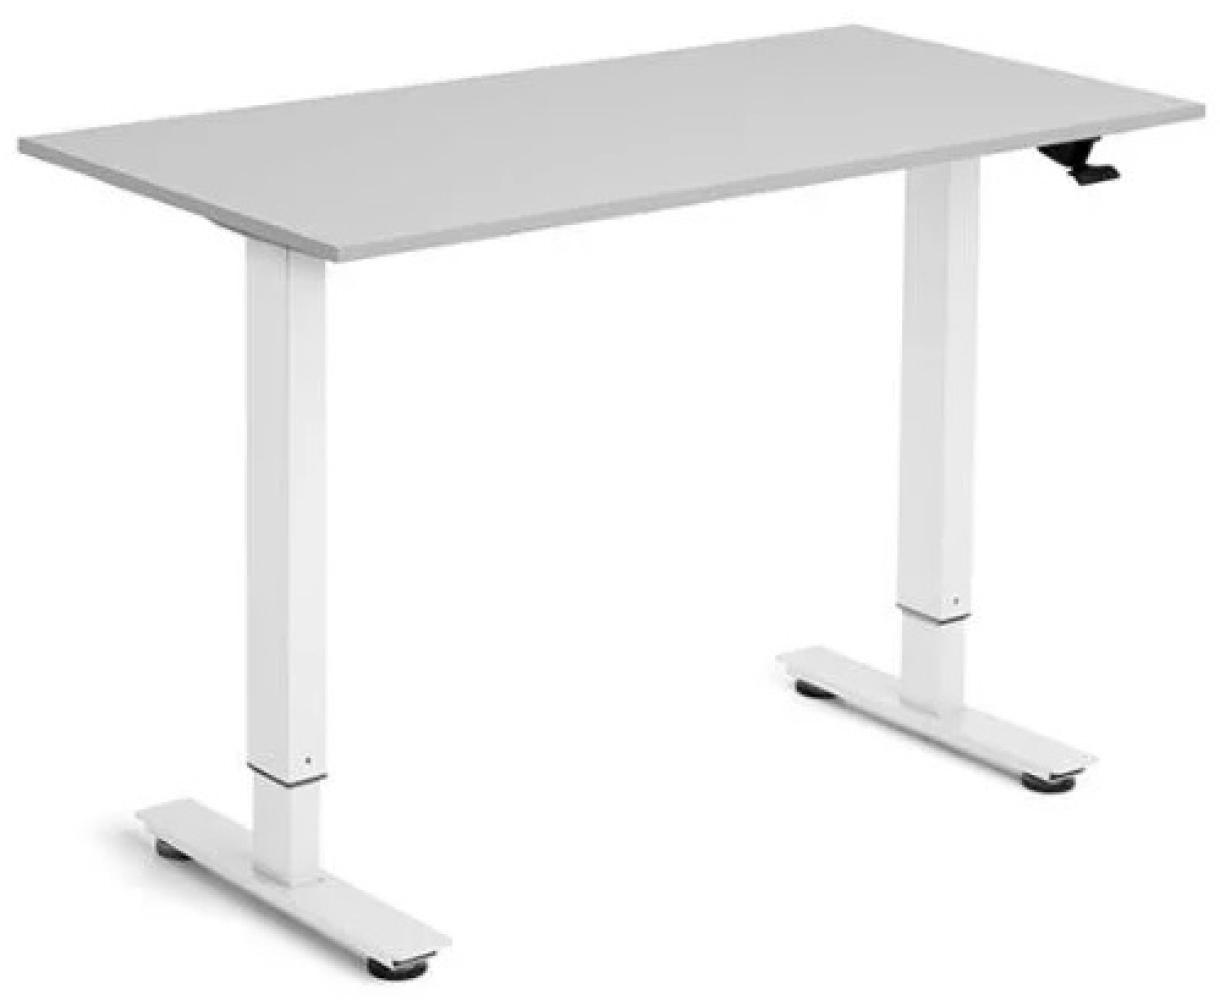 Flexidesk Erhöhter niedriger Tisch 120x60 cm hellgrau/weiß Bild 1